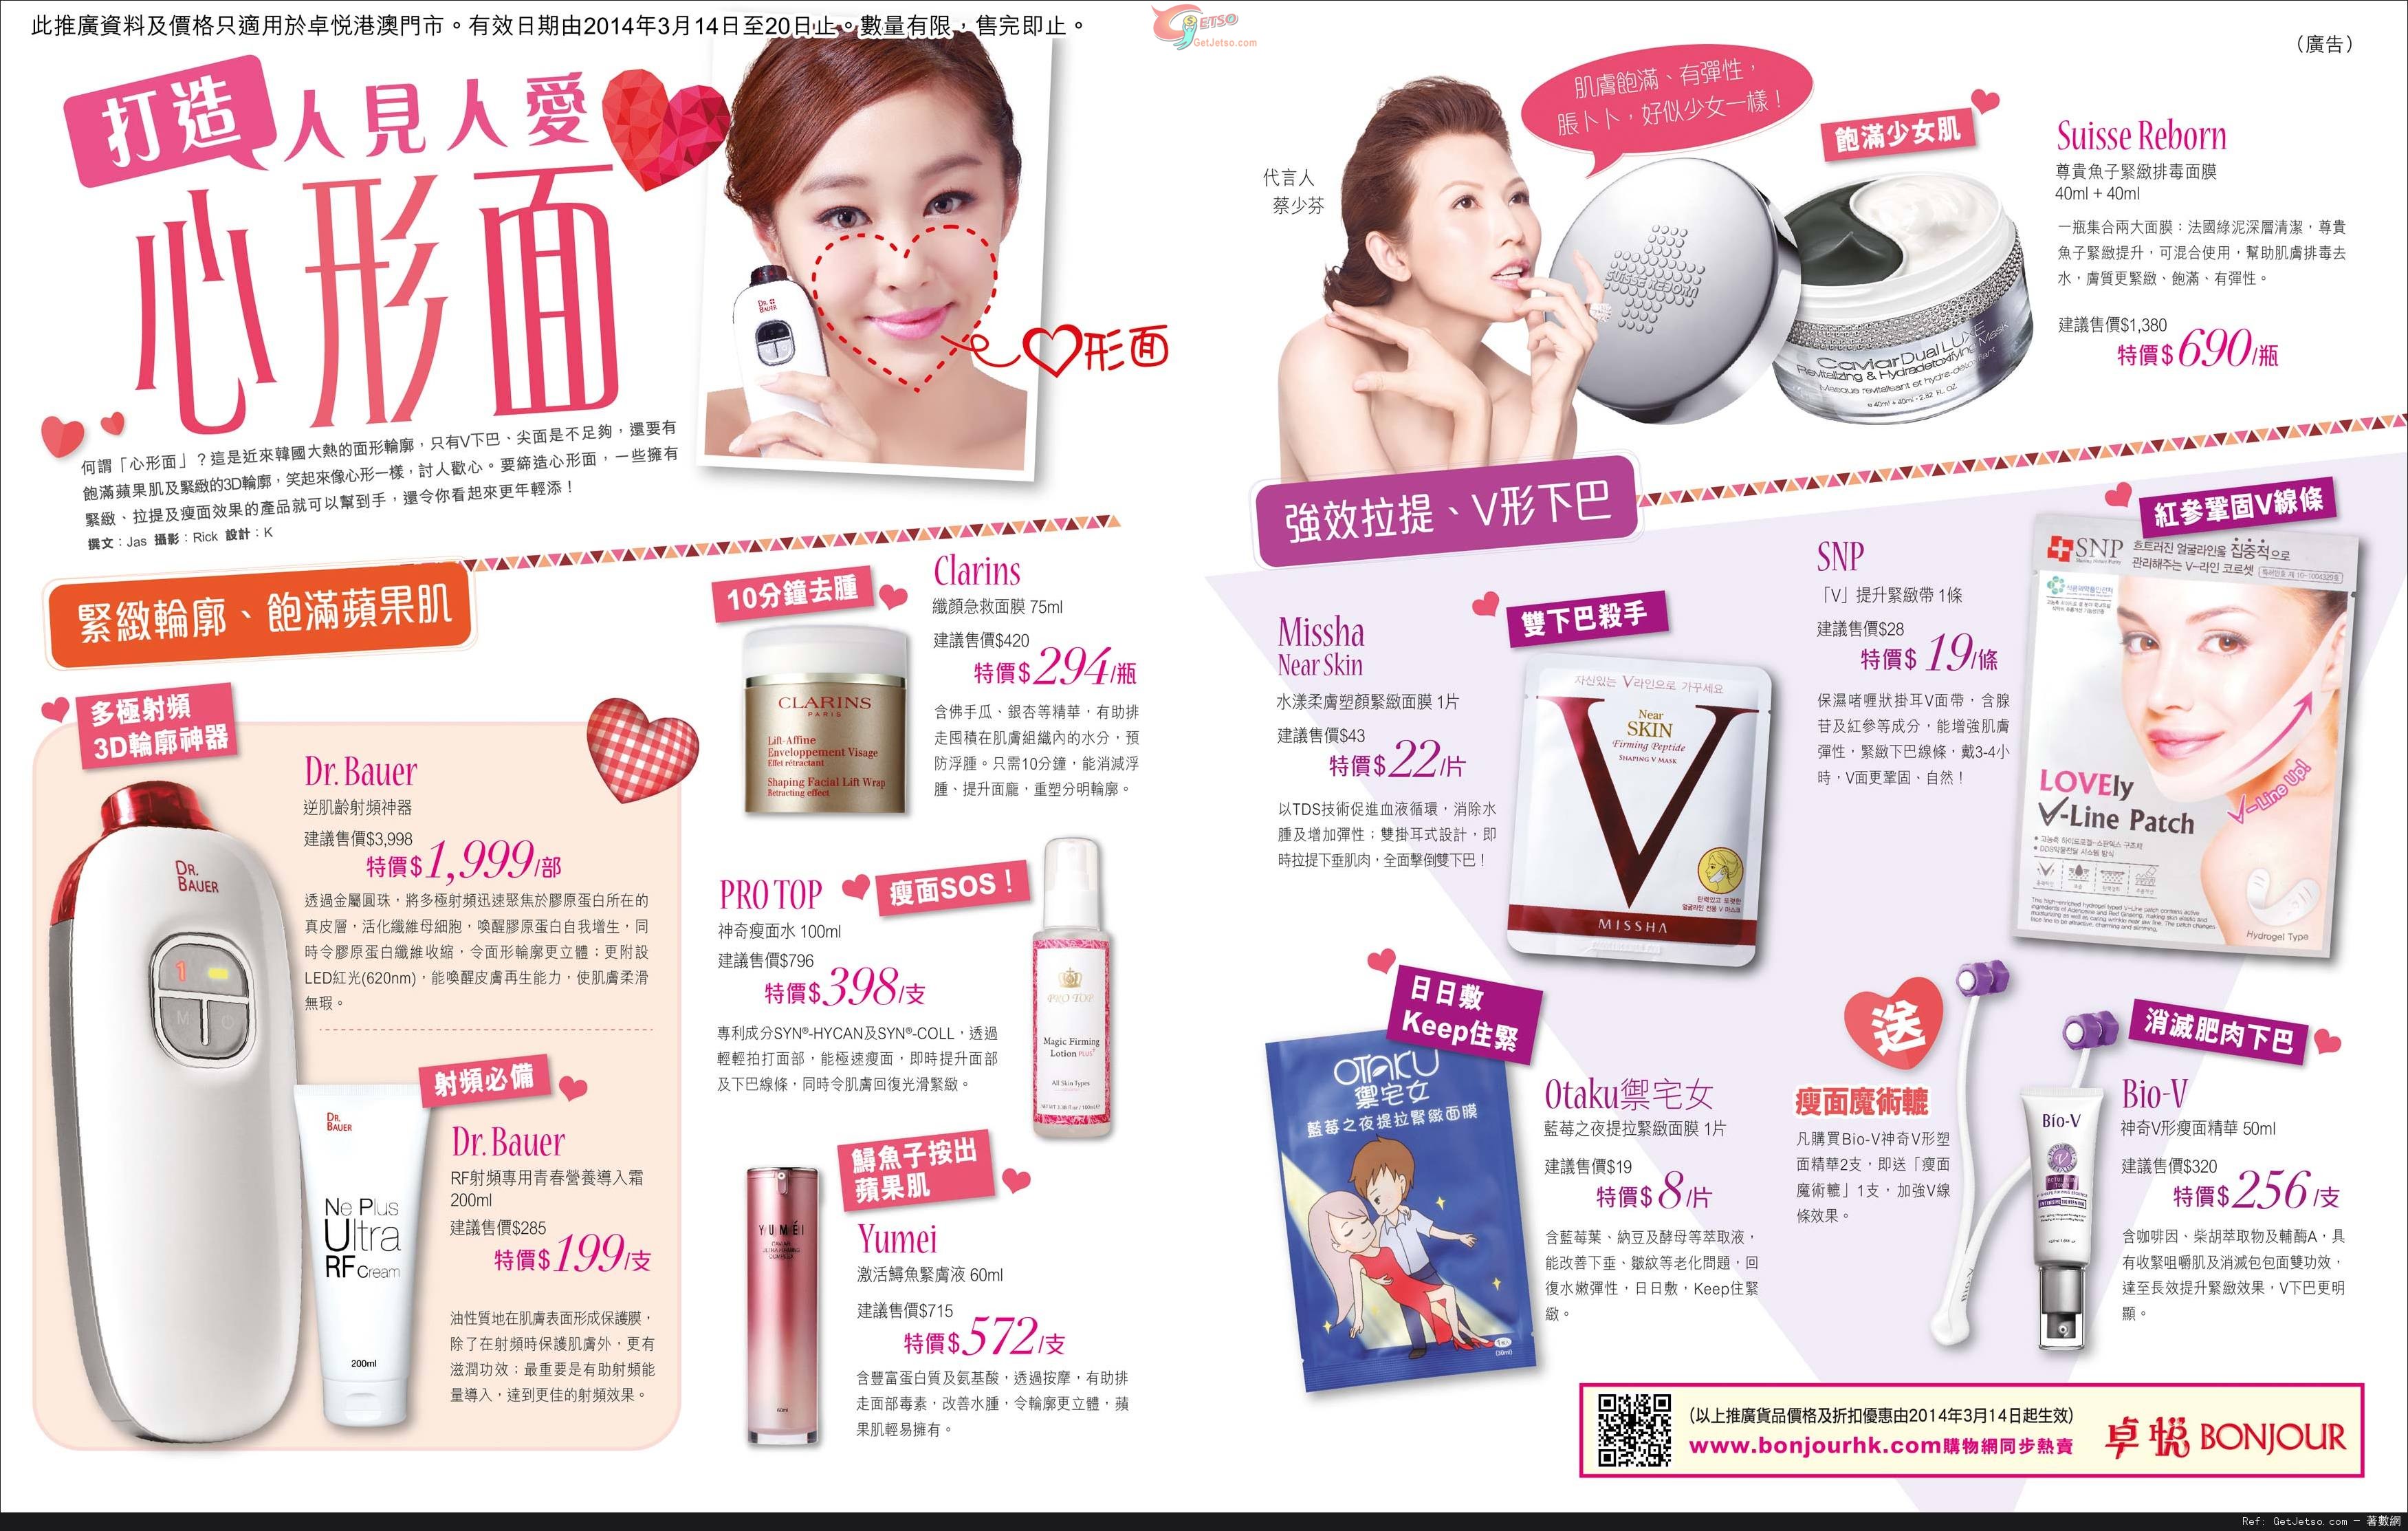 卓悅瘦面產品及韓國護膚品購買優惠(至14年3月20日)圖片1